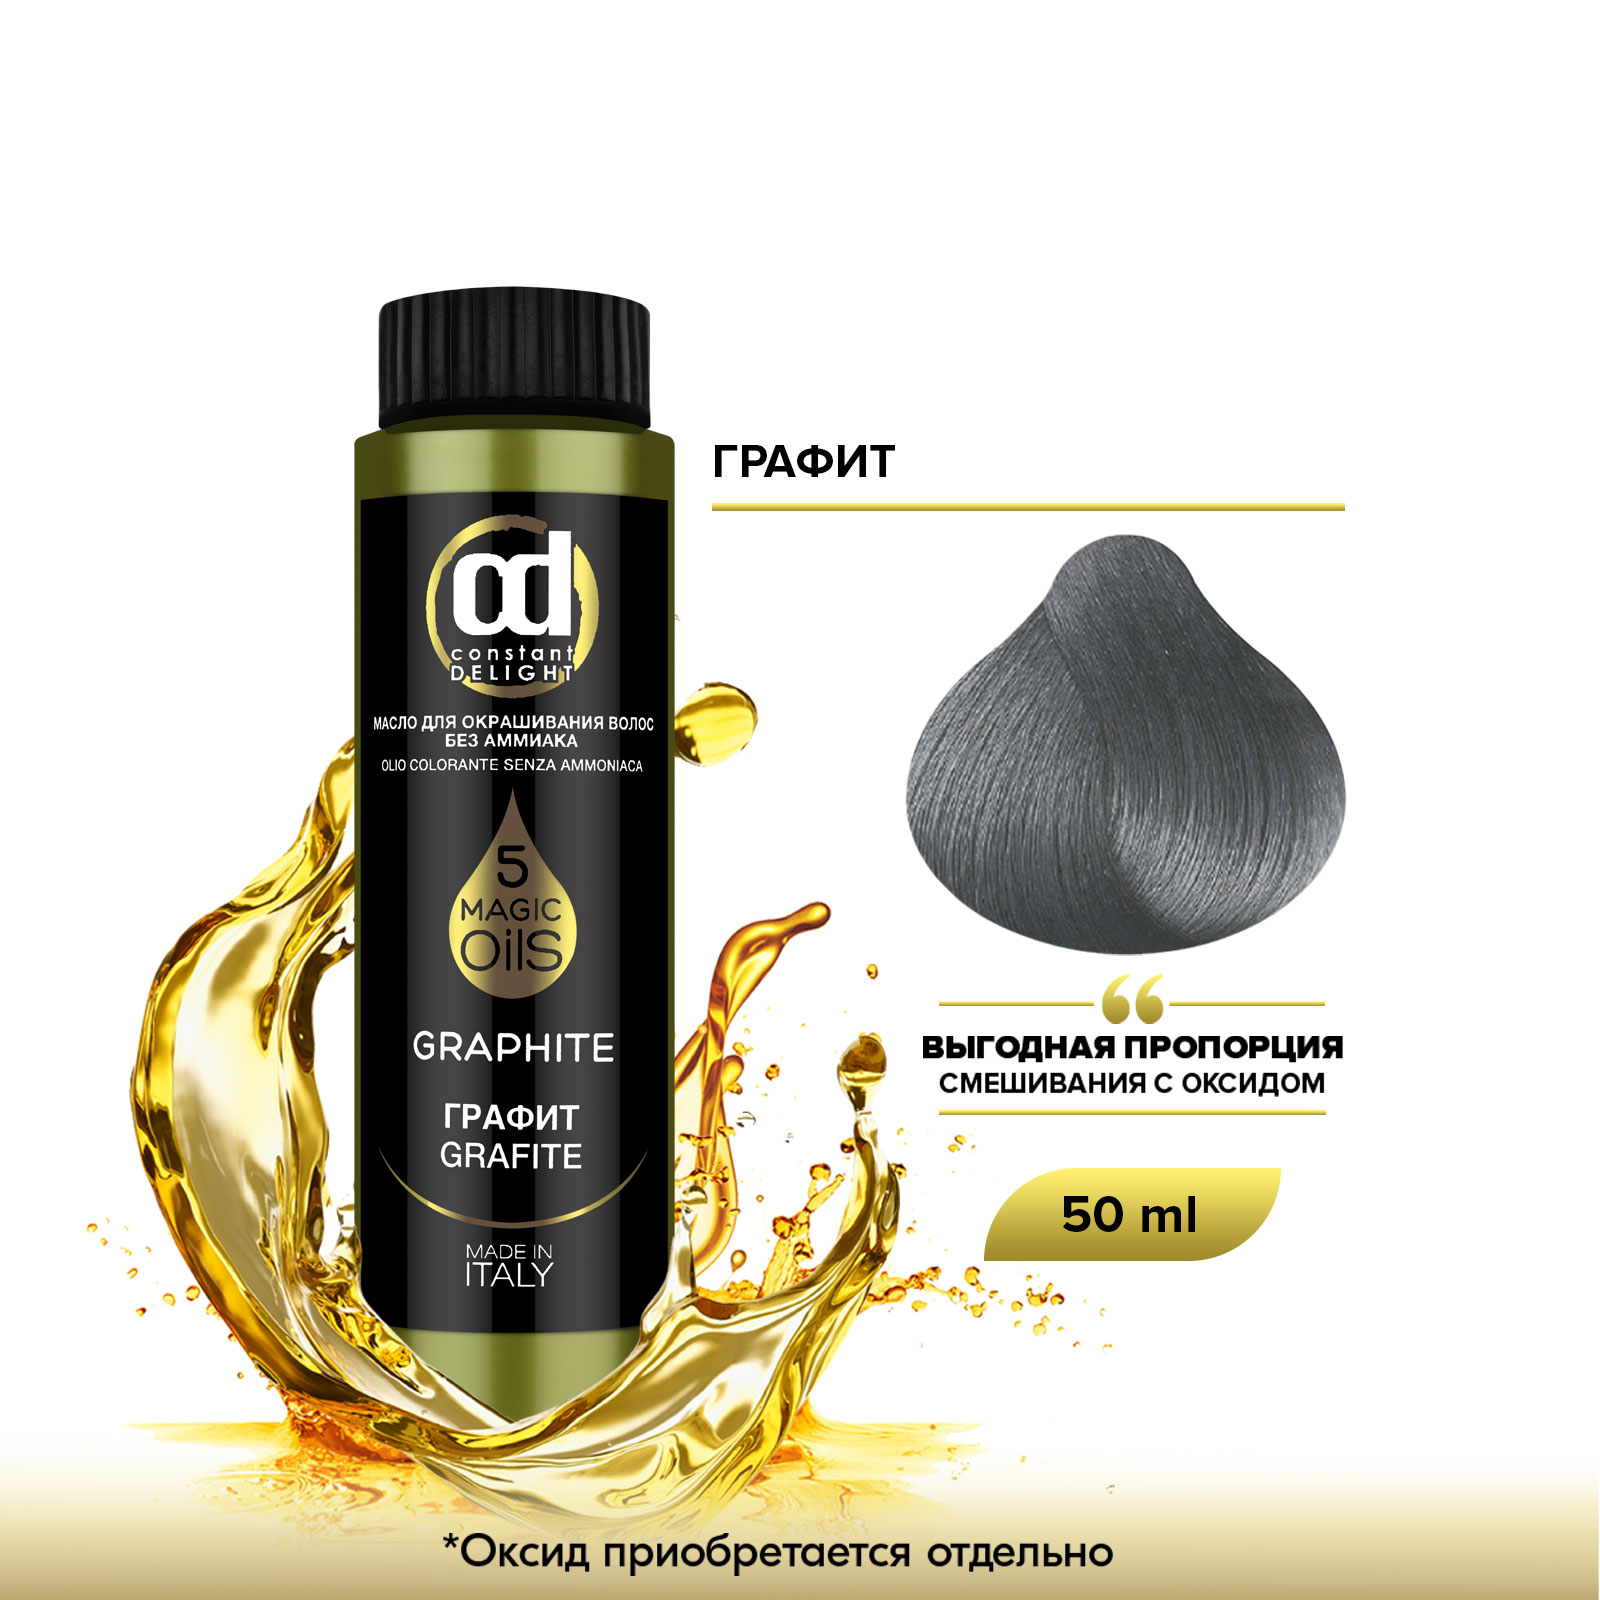 Масло Constant Delight Magic 5 Oils для окрашивания волос графит 50 мл pure bases spa бокс подарочный magic earth tobacco spices шампунь скраб масло